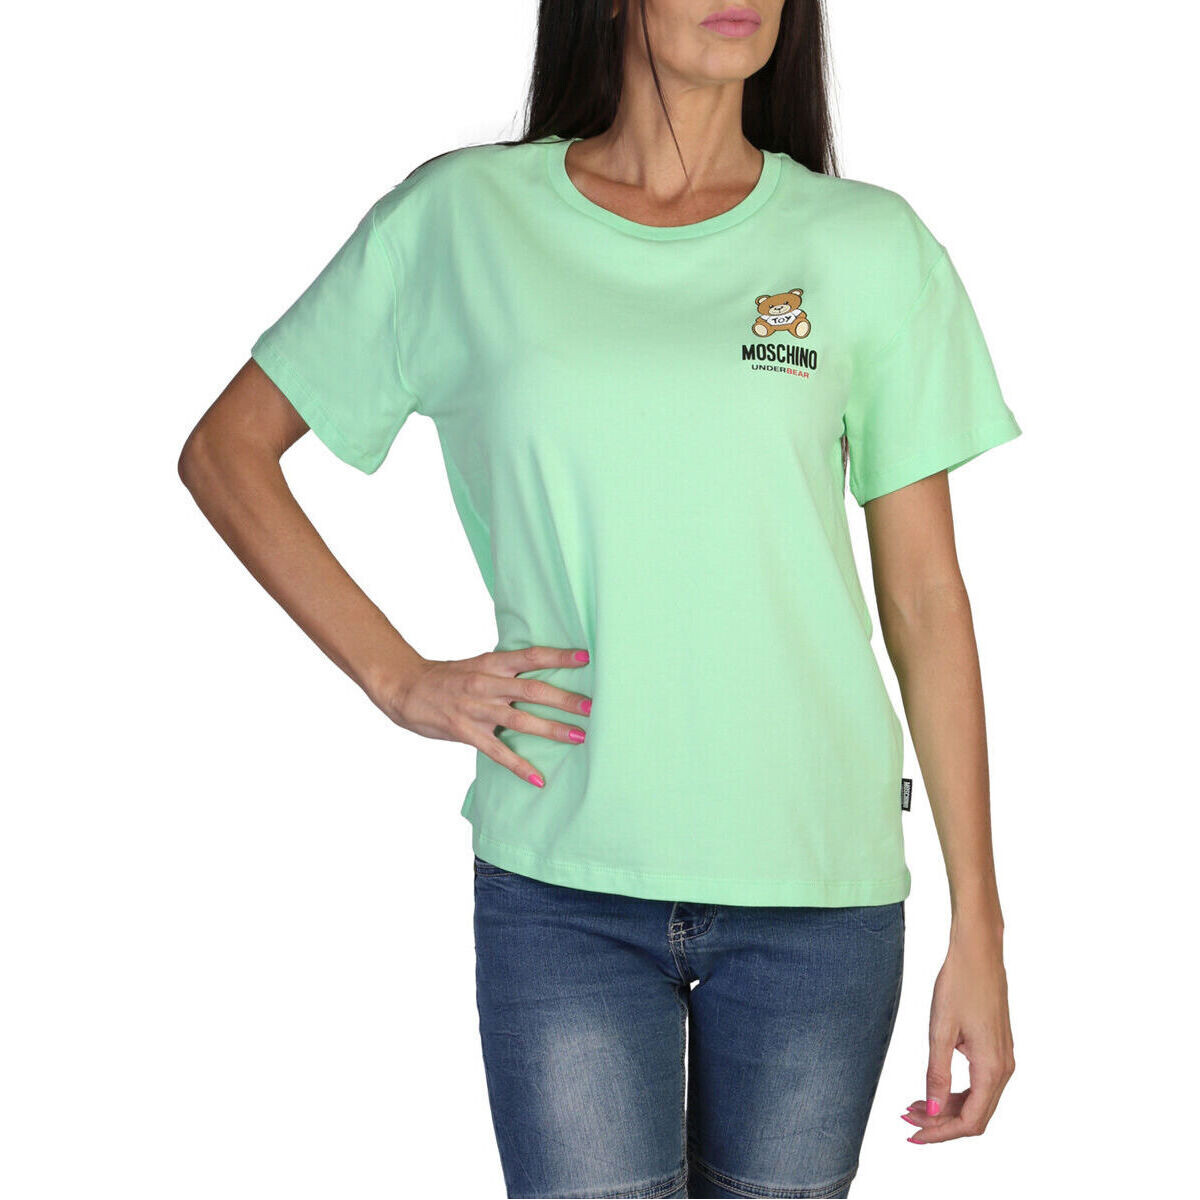 Moschino  T-shirt με κοντά μανίκια Moschino A0784 4410 A0449 Green